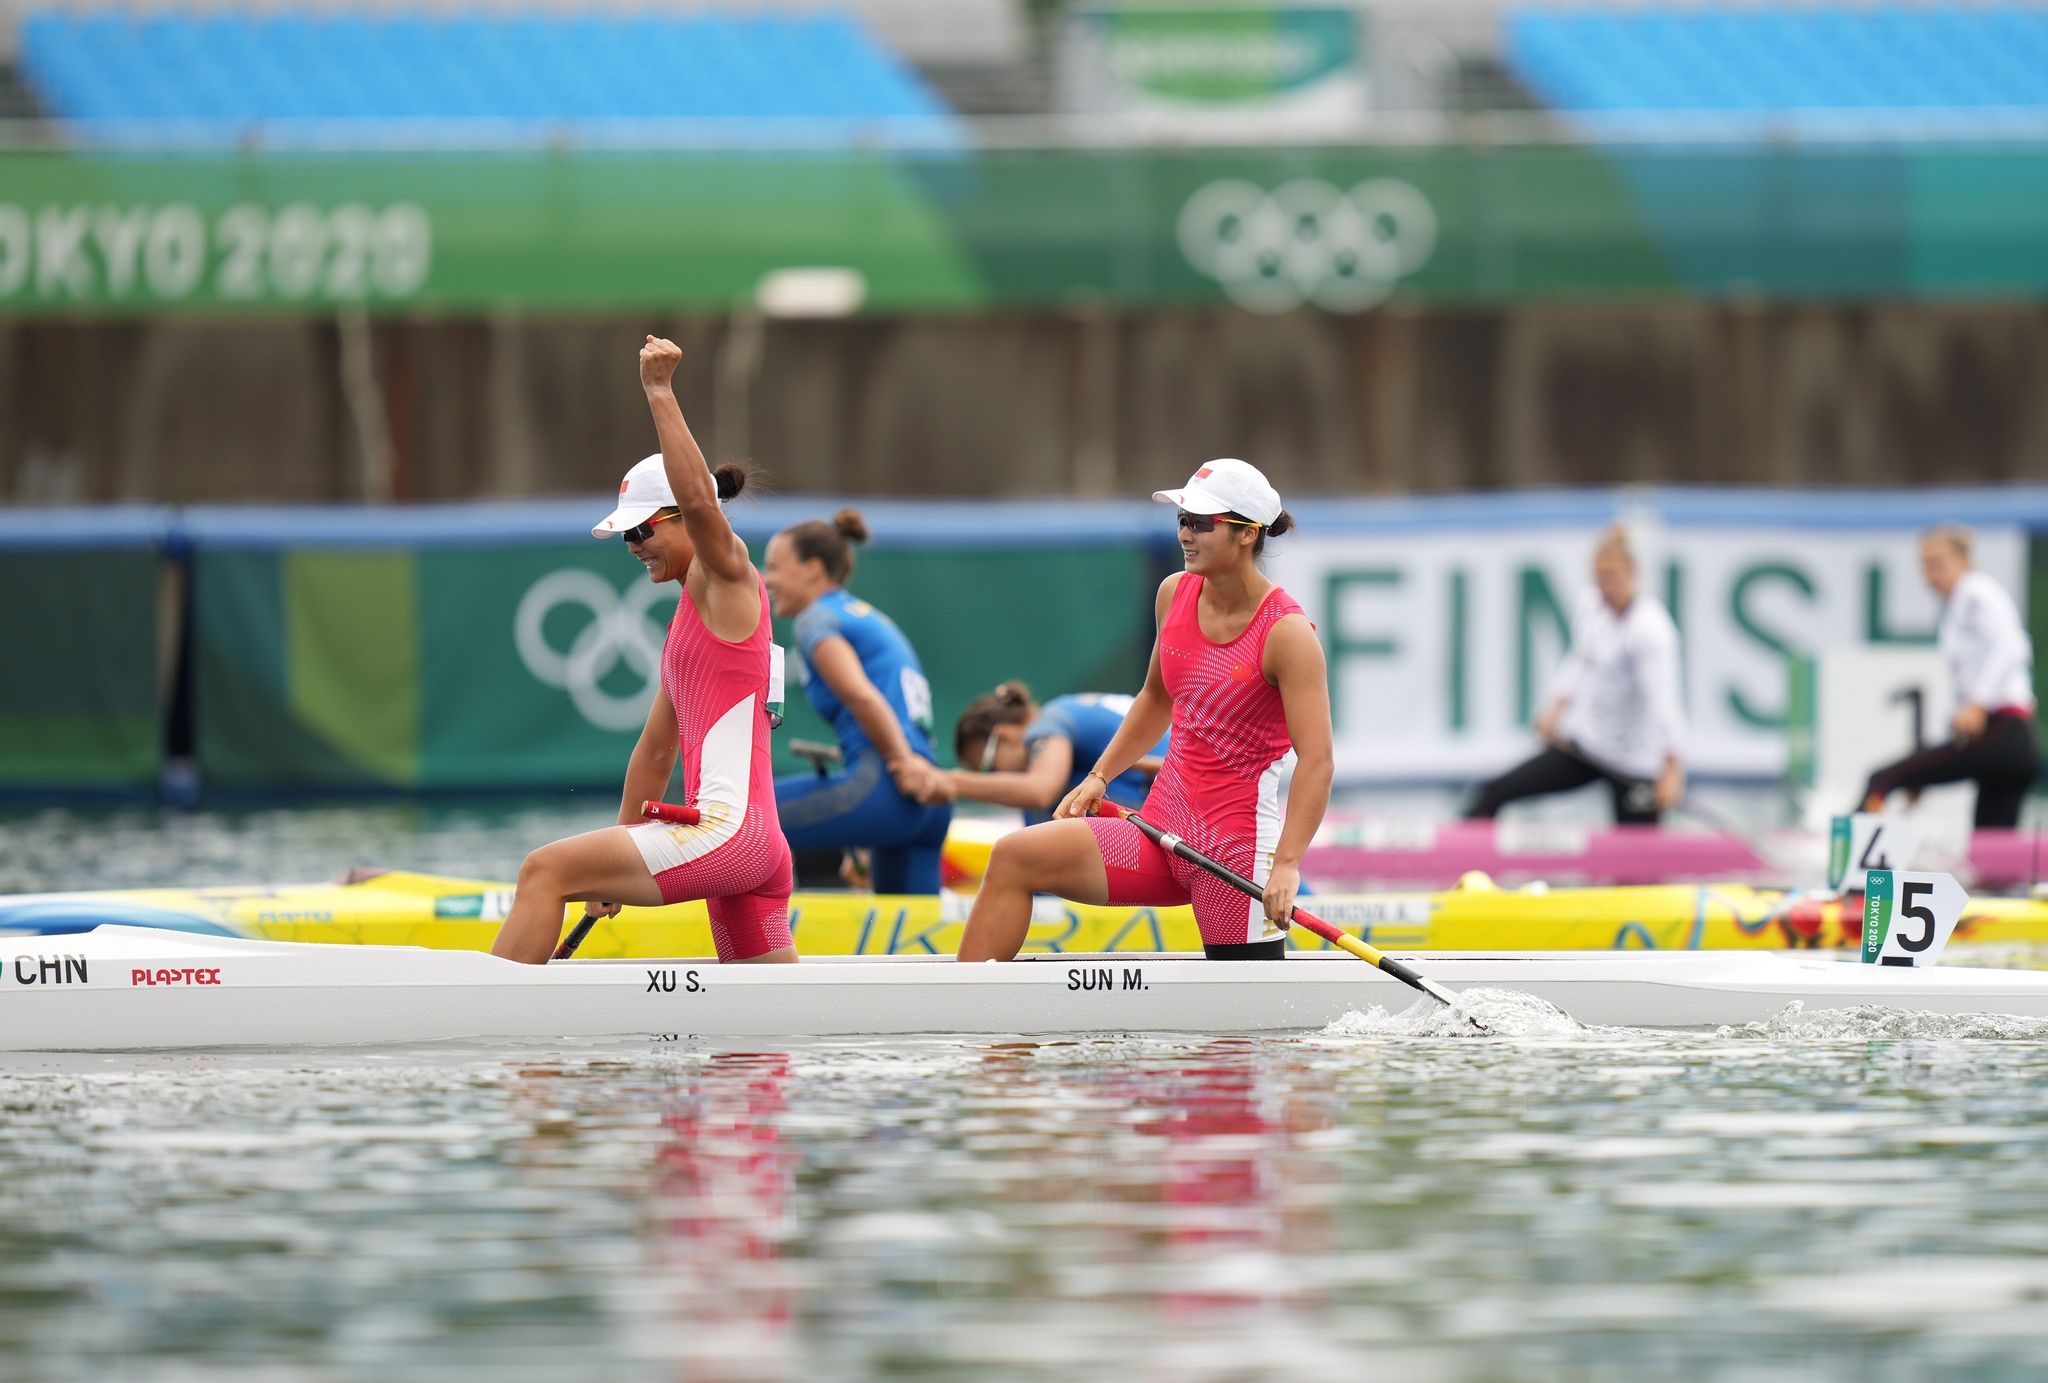 女子500米双人划艇夺冠图片